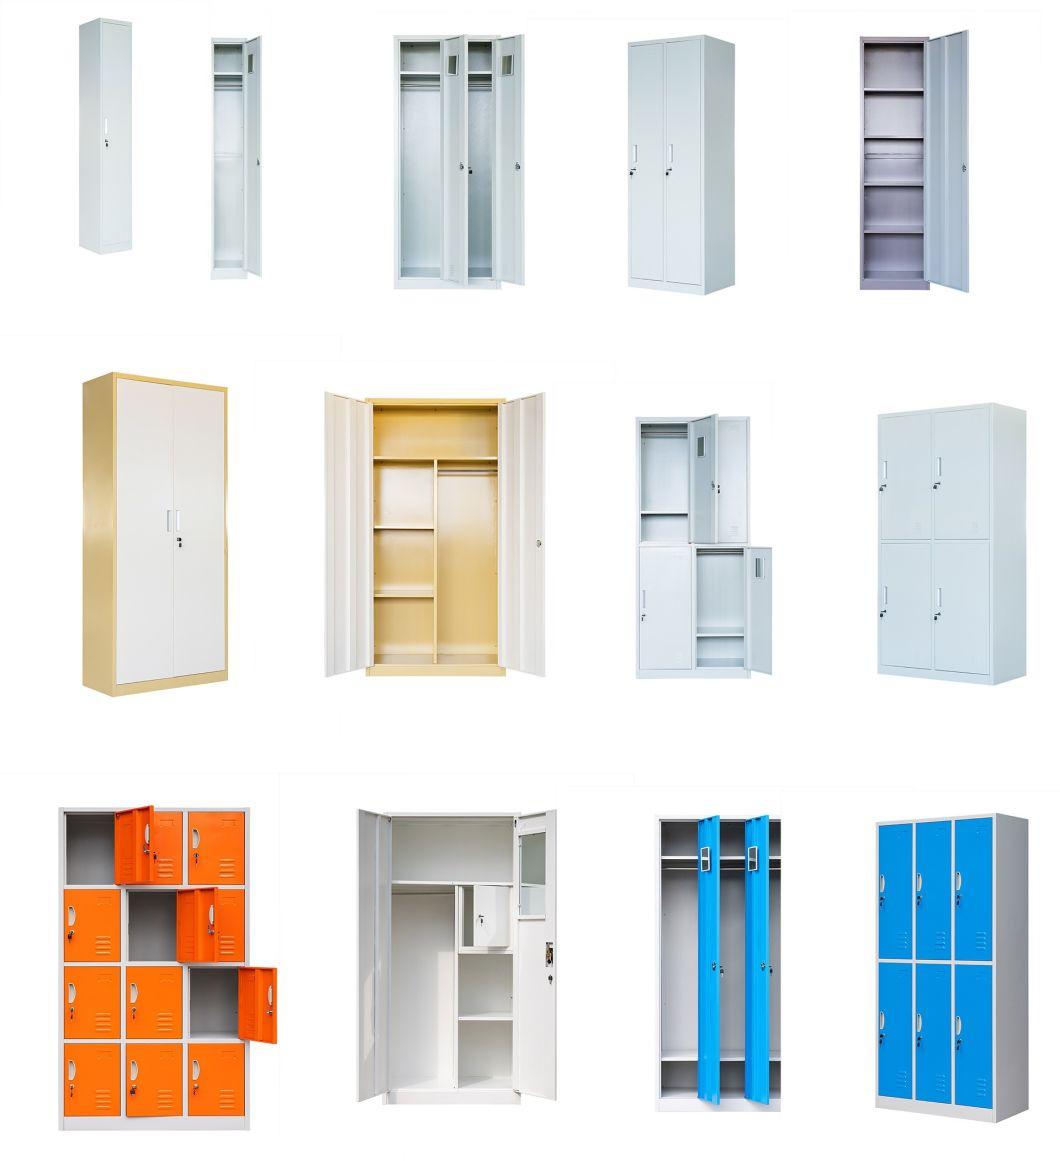 European Style One Door Steel Cabinet with Feet